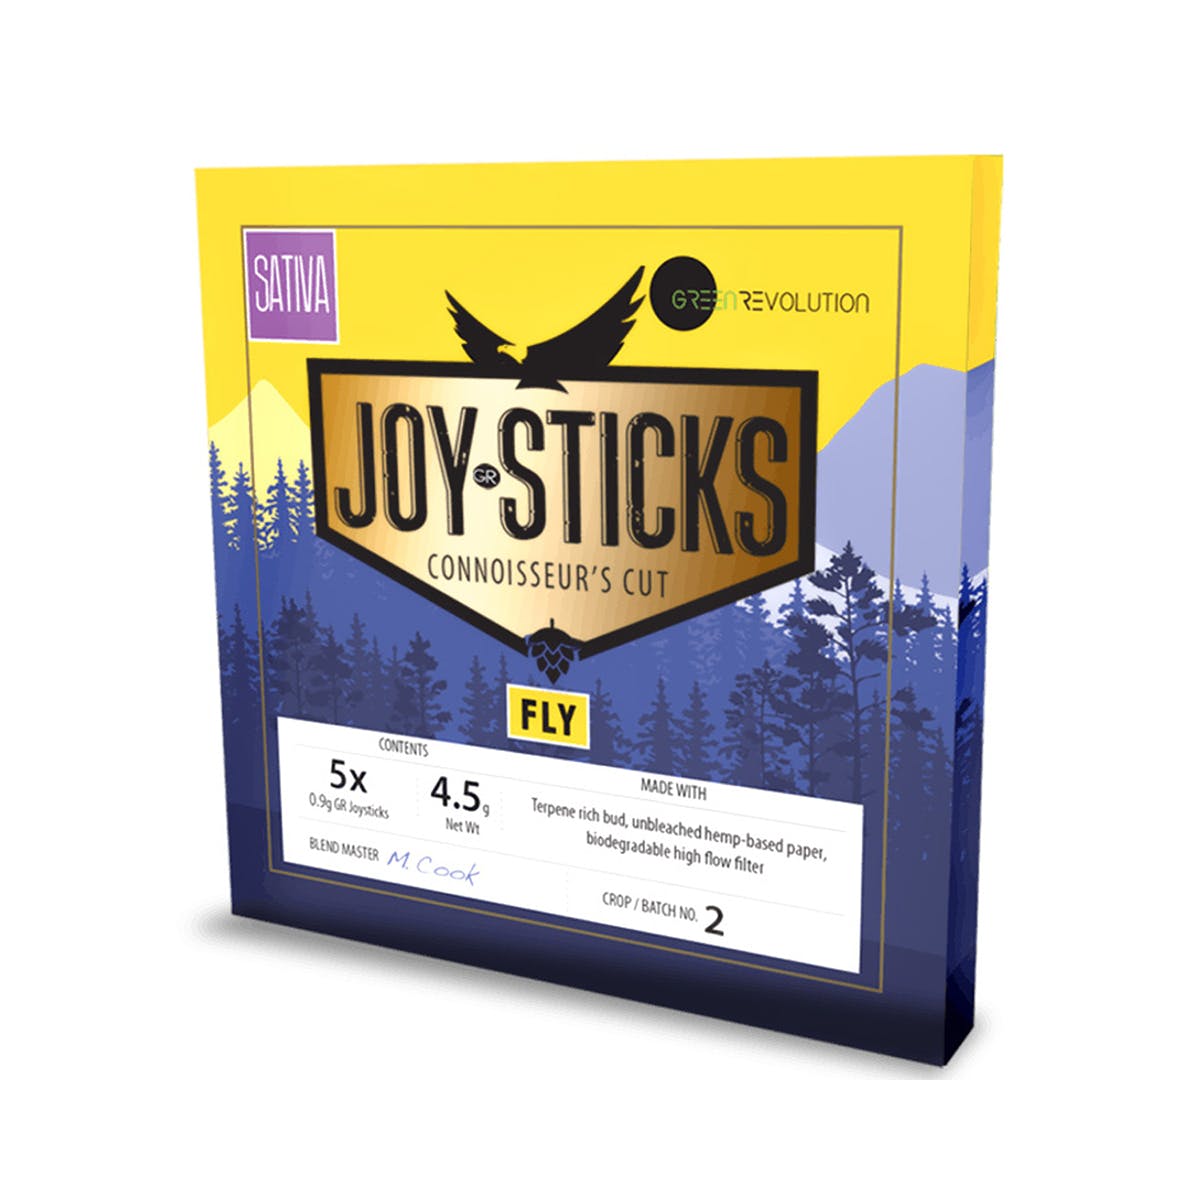 Joysticks - Fly 5x (4.5g)